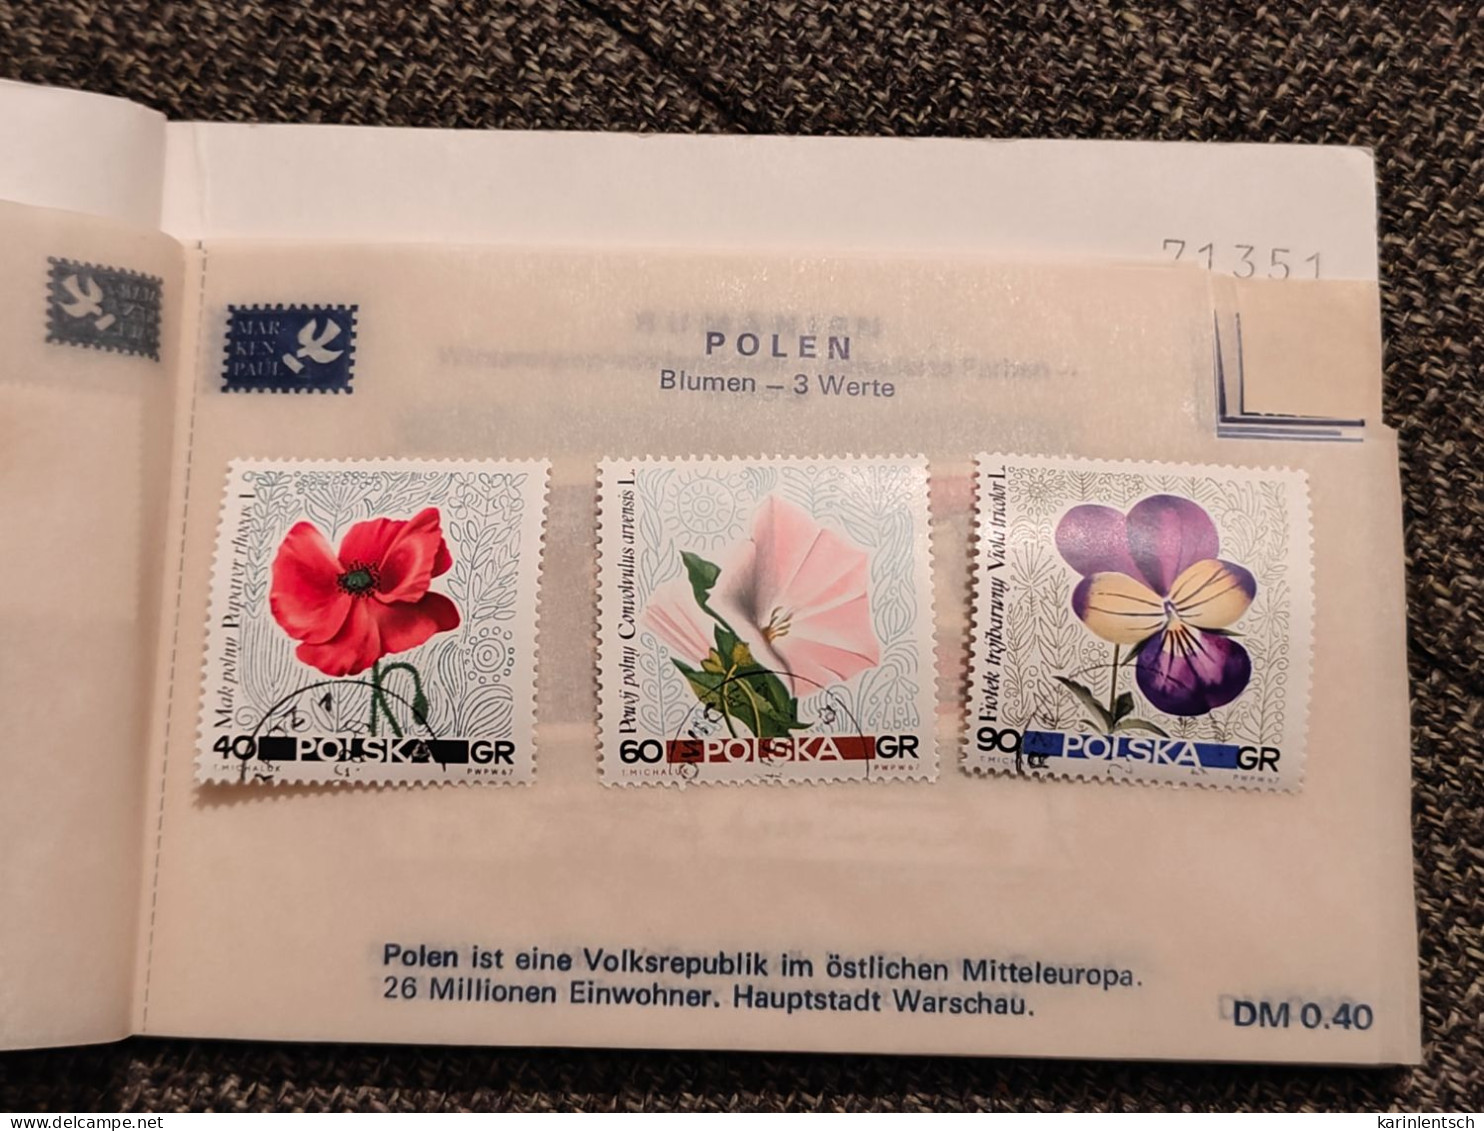 Auswahlhef mit Briefmarken aus aller Welt